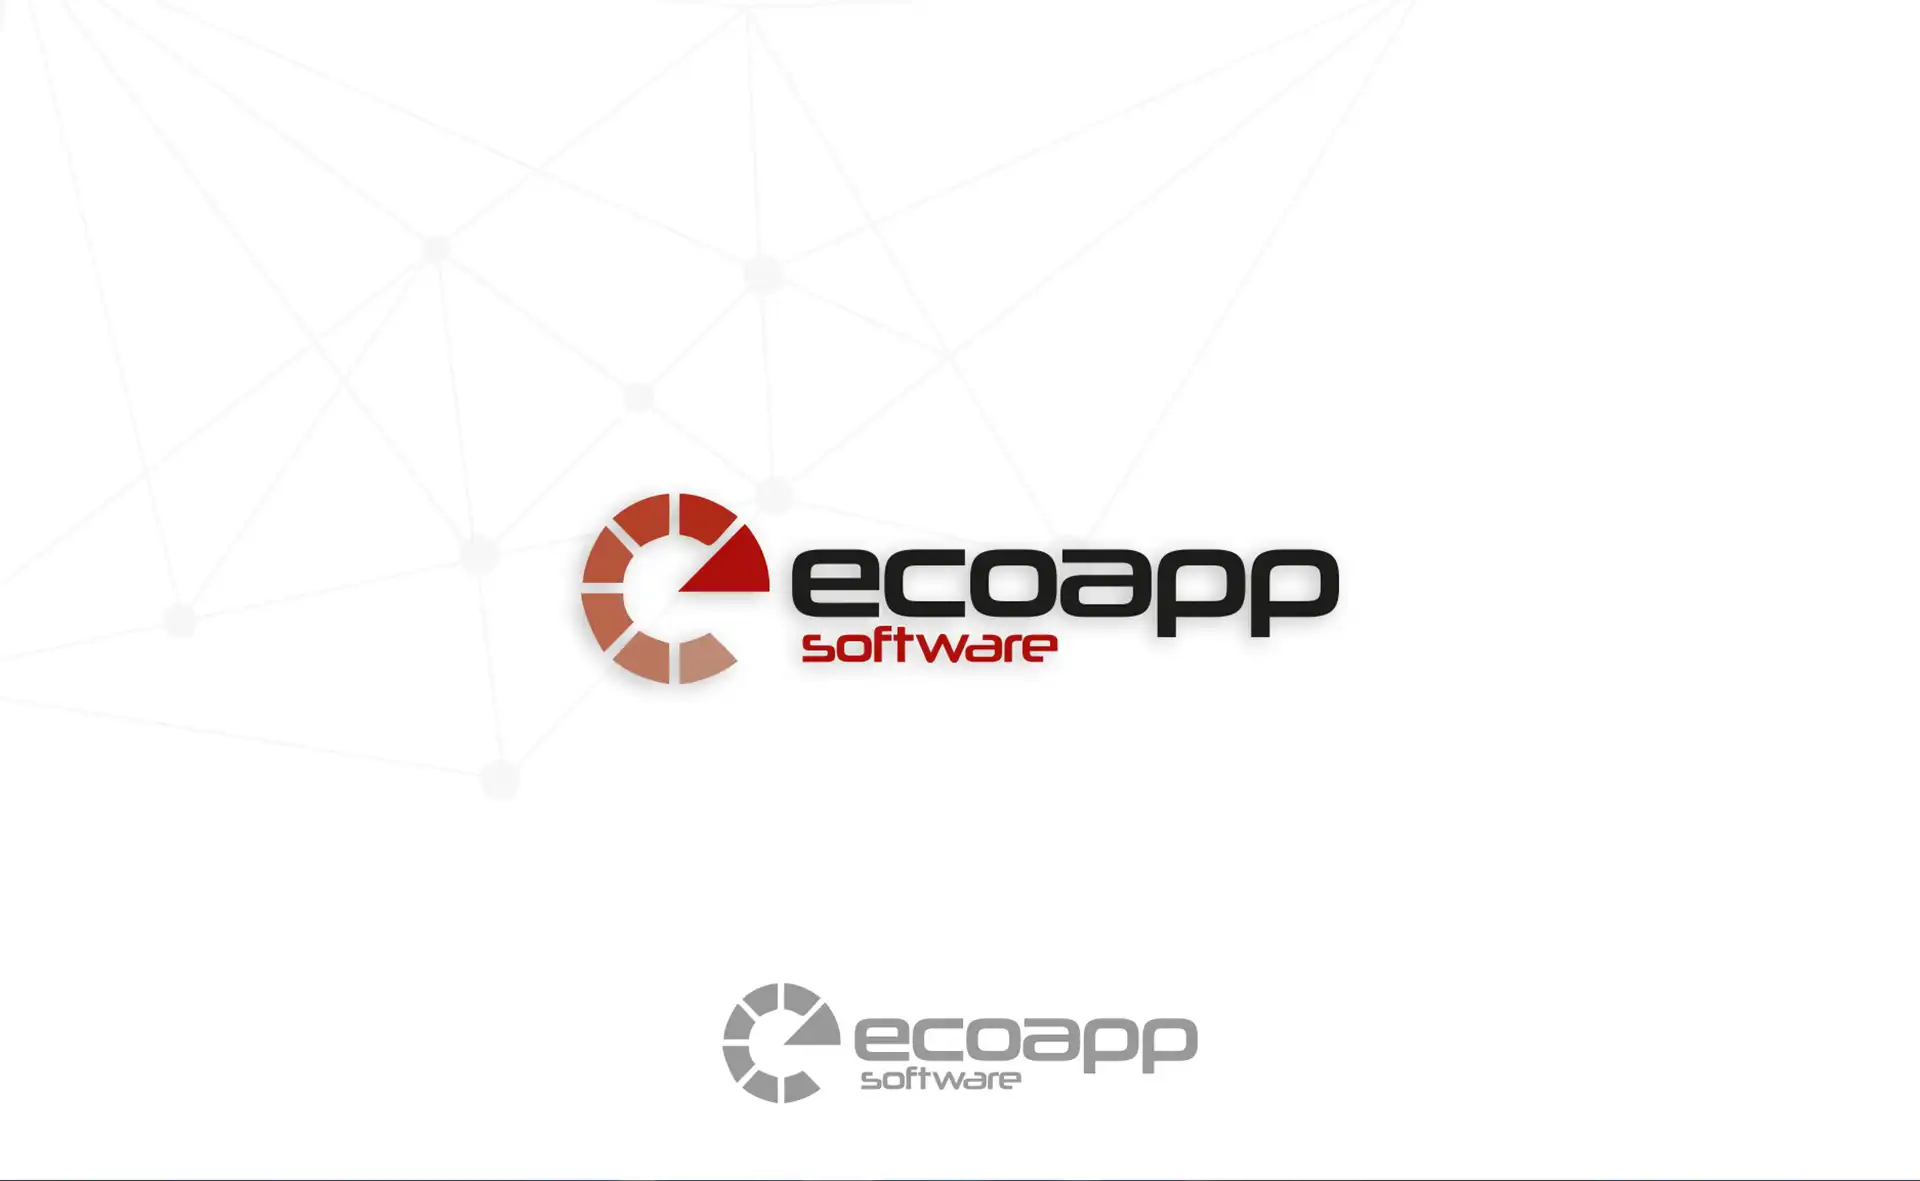 Ecoapp